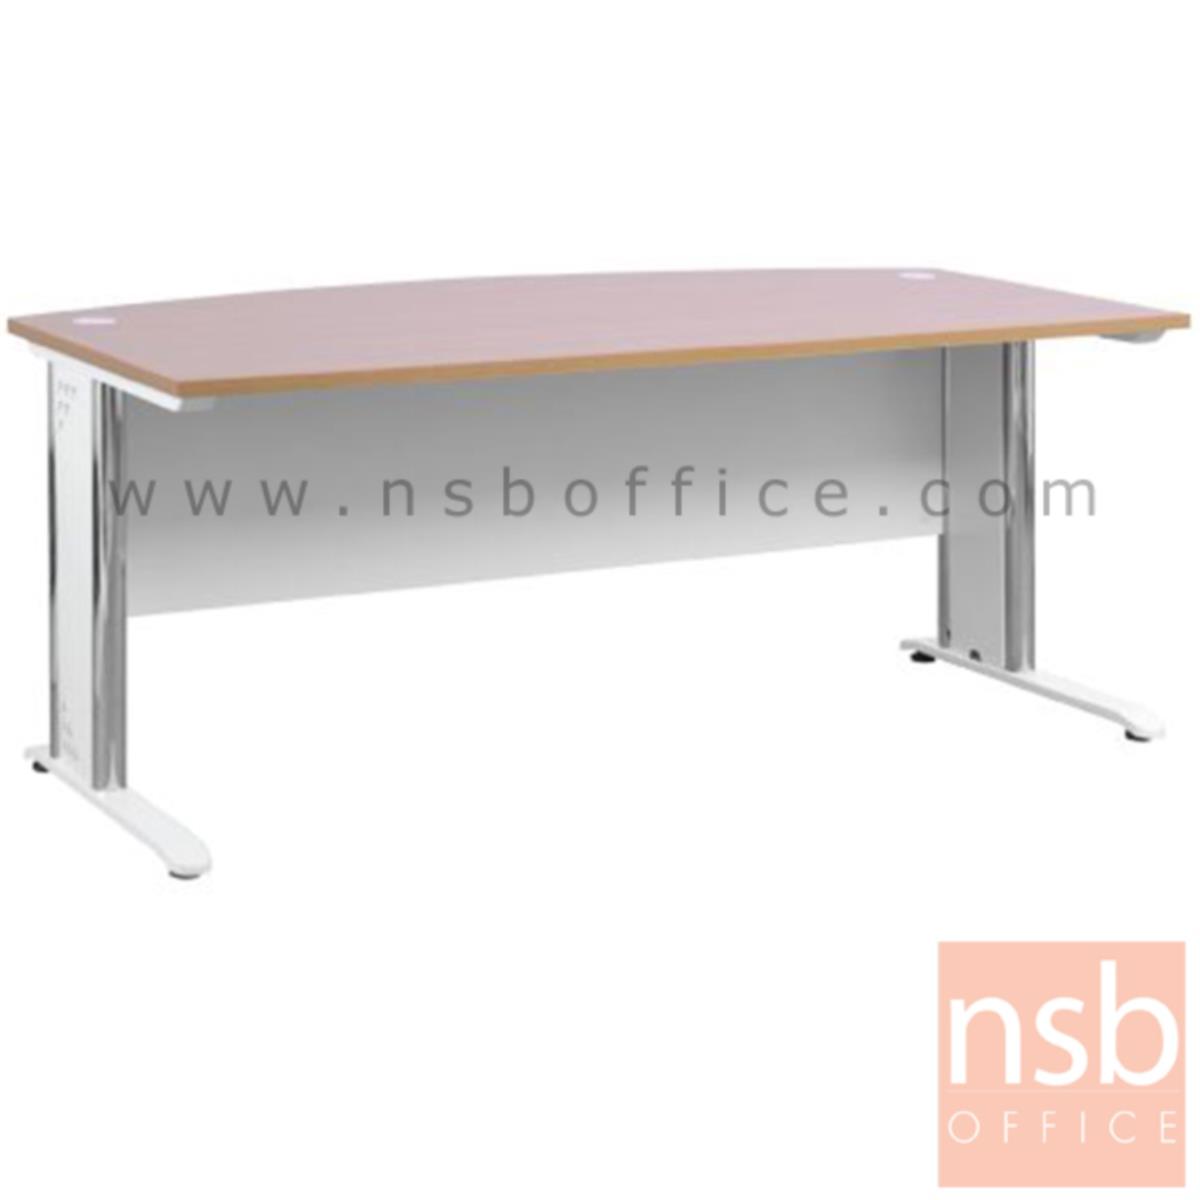 โต๊ะผู้บริหารตัวแอล  รุ่น MN-1820 ขนาด 180W cm. พร้อมลิ้นชักและตู้ข้าง ขาเหล็ก